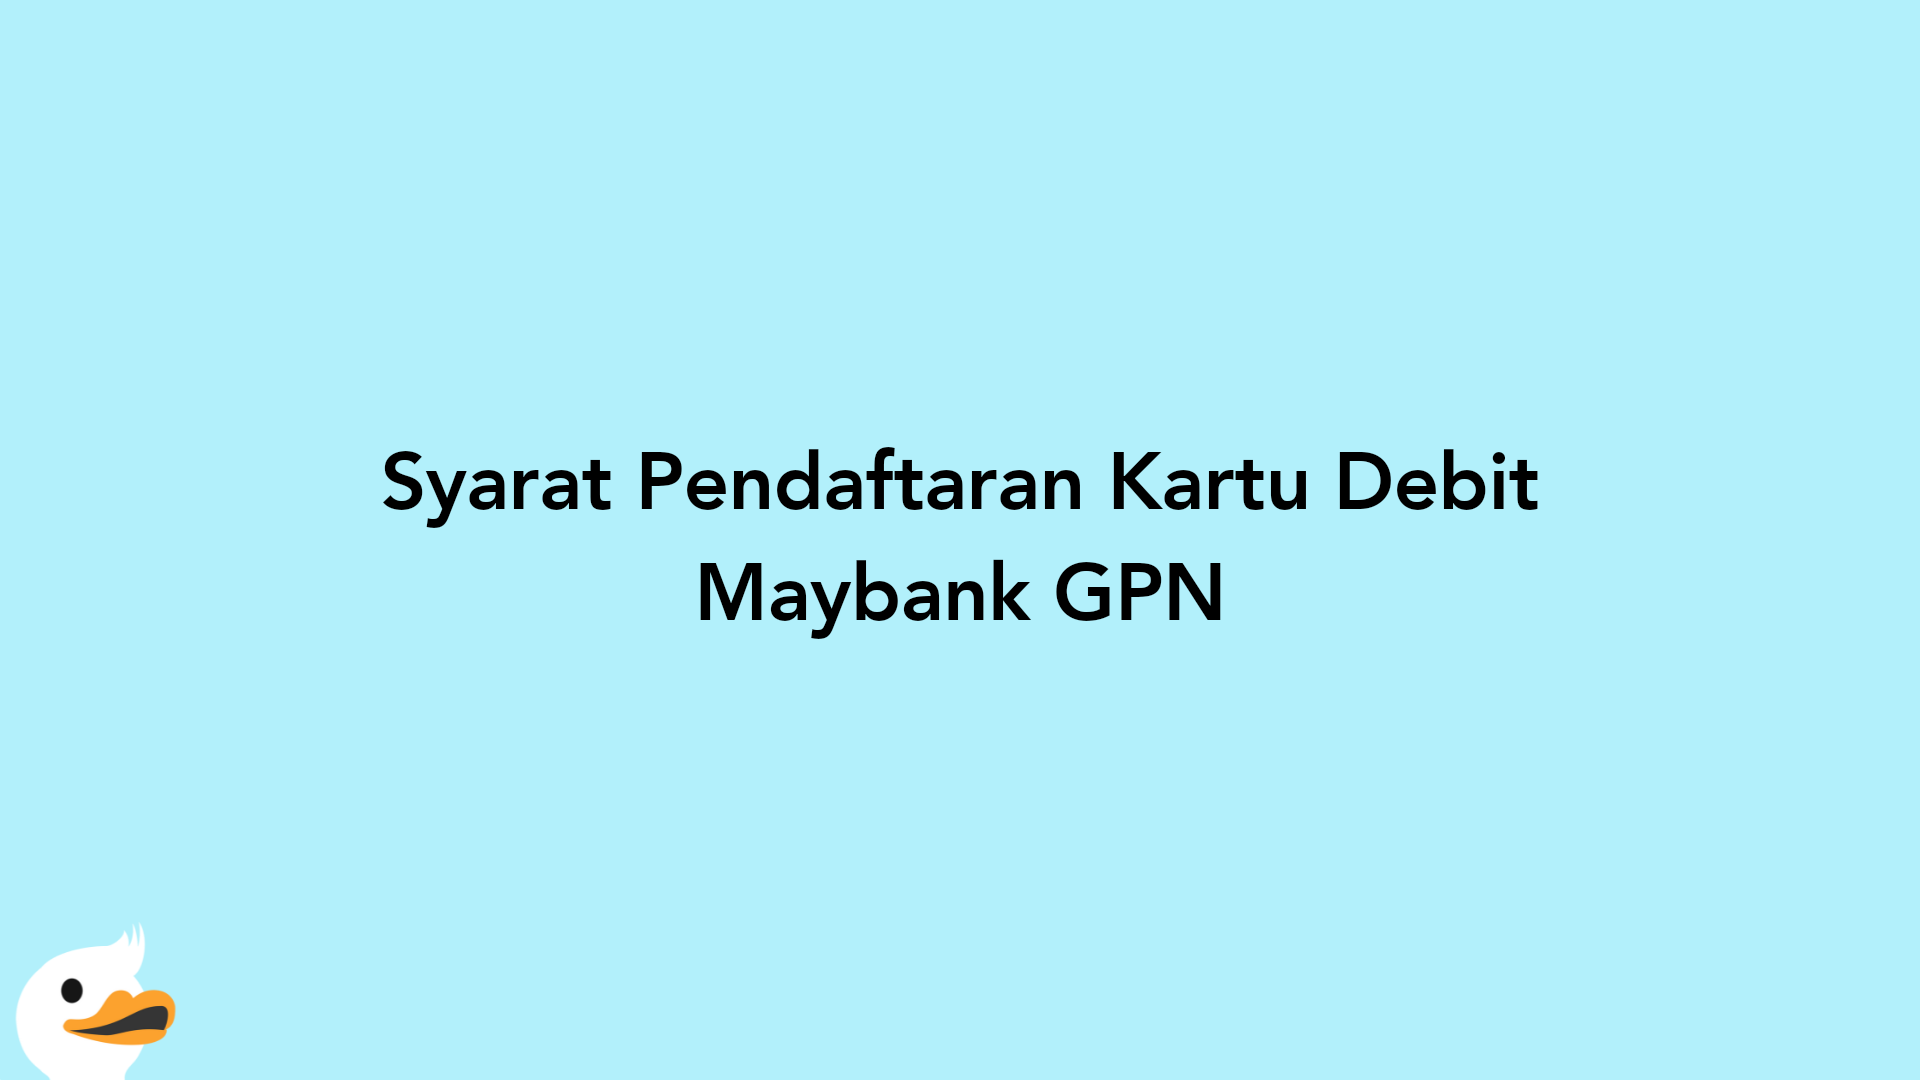 Syarat Pendaftaran Kartu Debit Maybank GPN